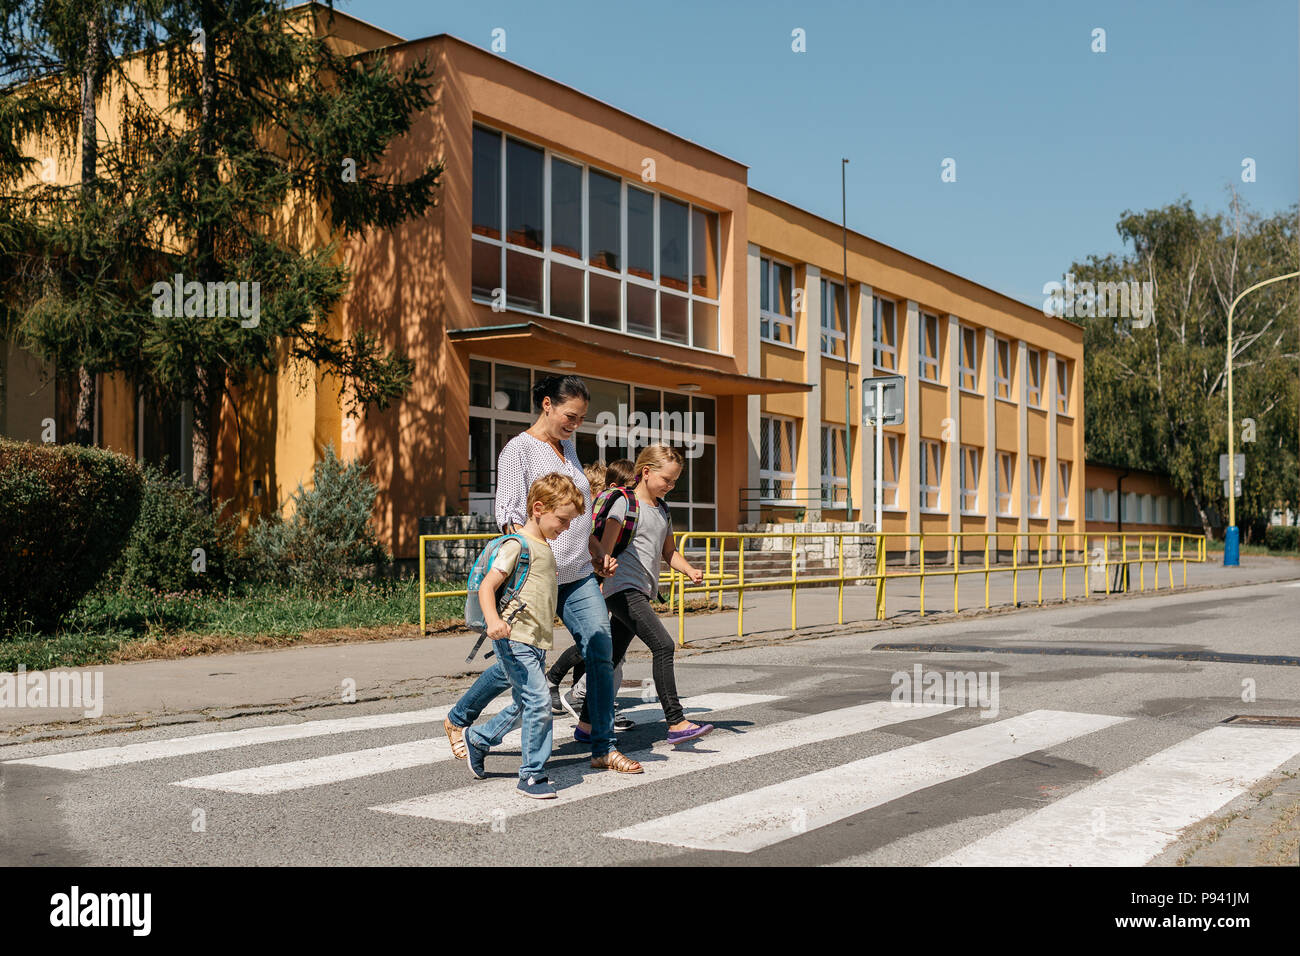 Sécurité routière - enfants traversant une route accompagné d'un adulte. Cueillette de la mère de ses enfants à l'école. Banque D'Images